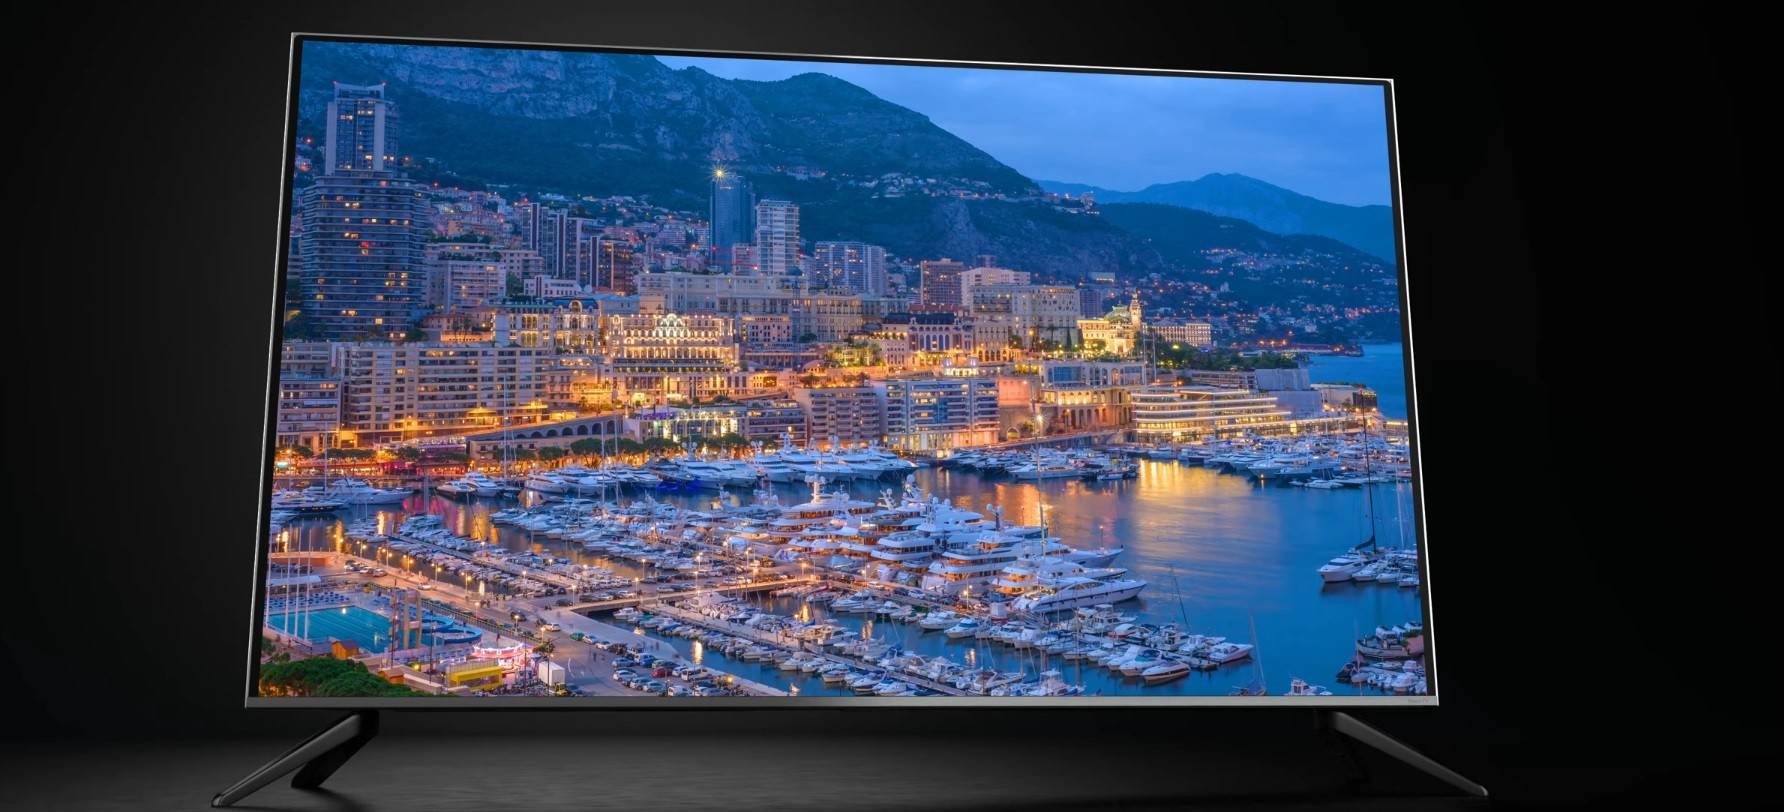 TCL Class 5-Series 4K Smart Google TV Long